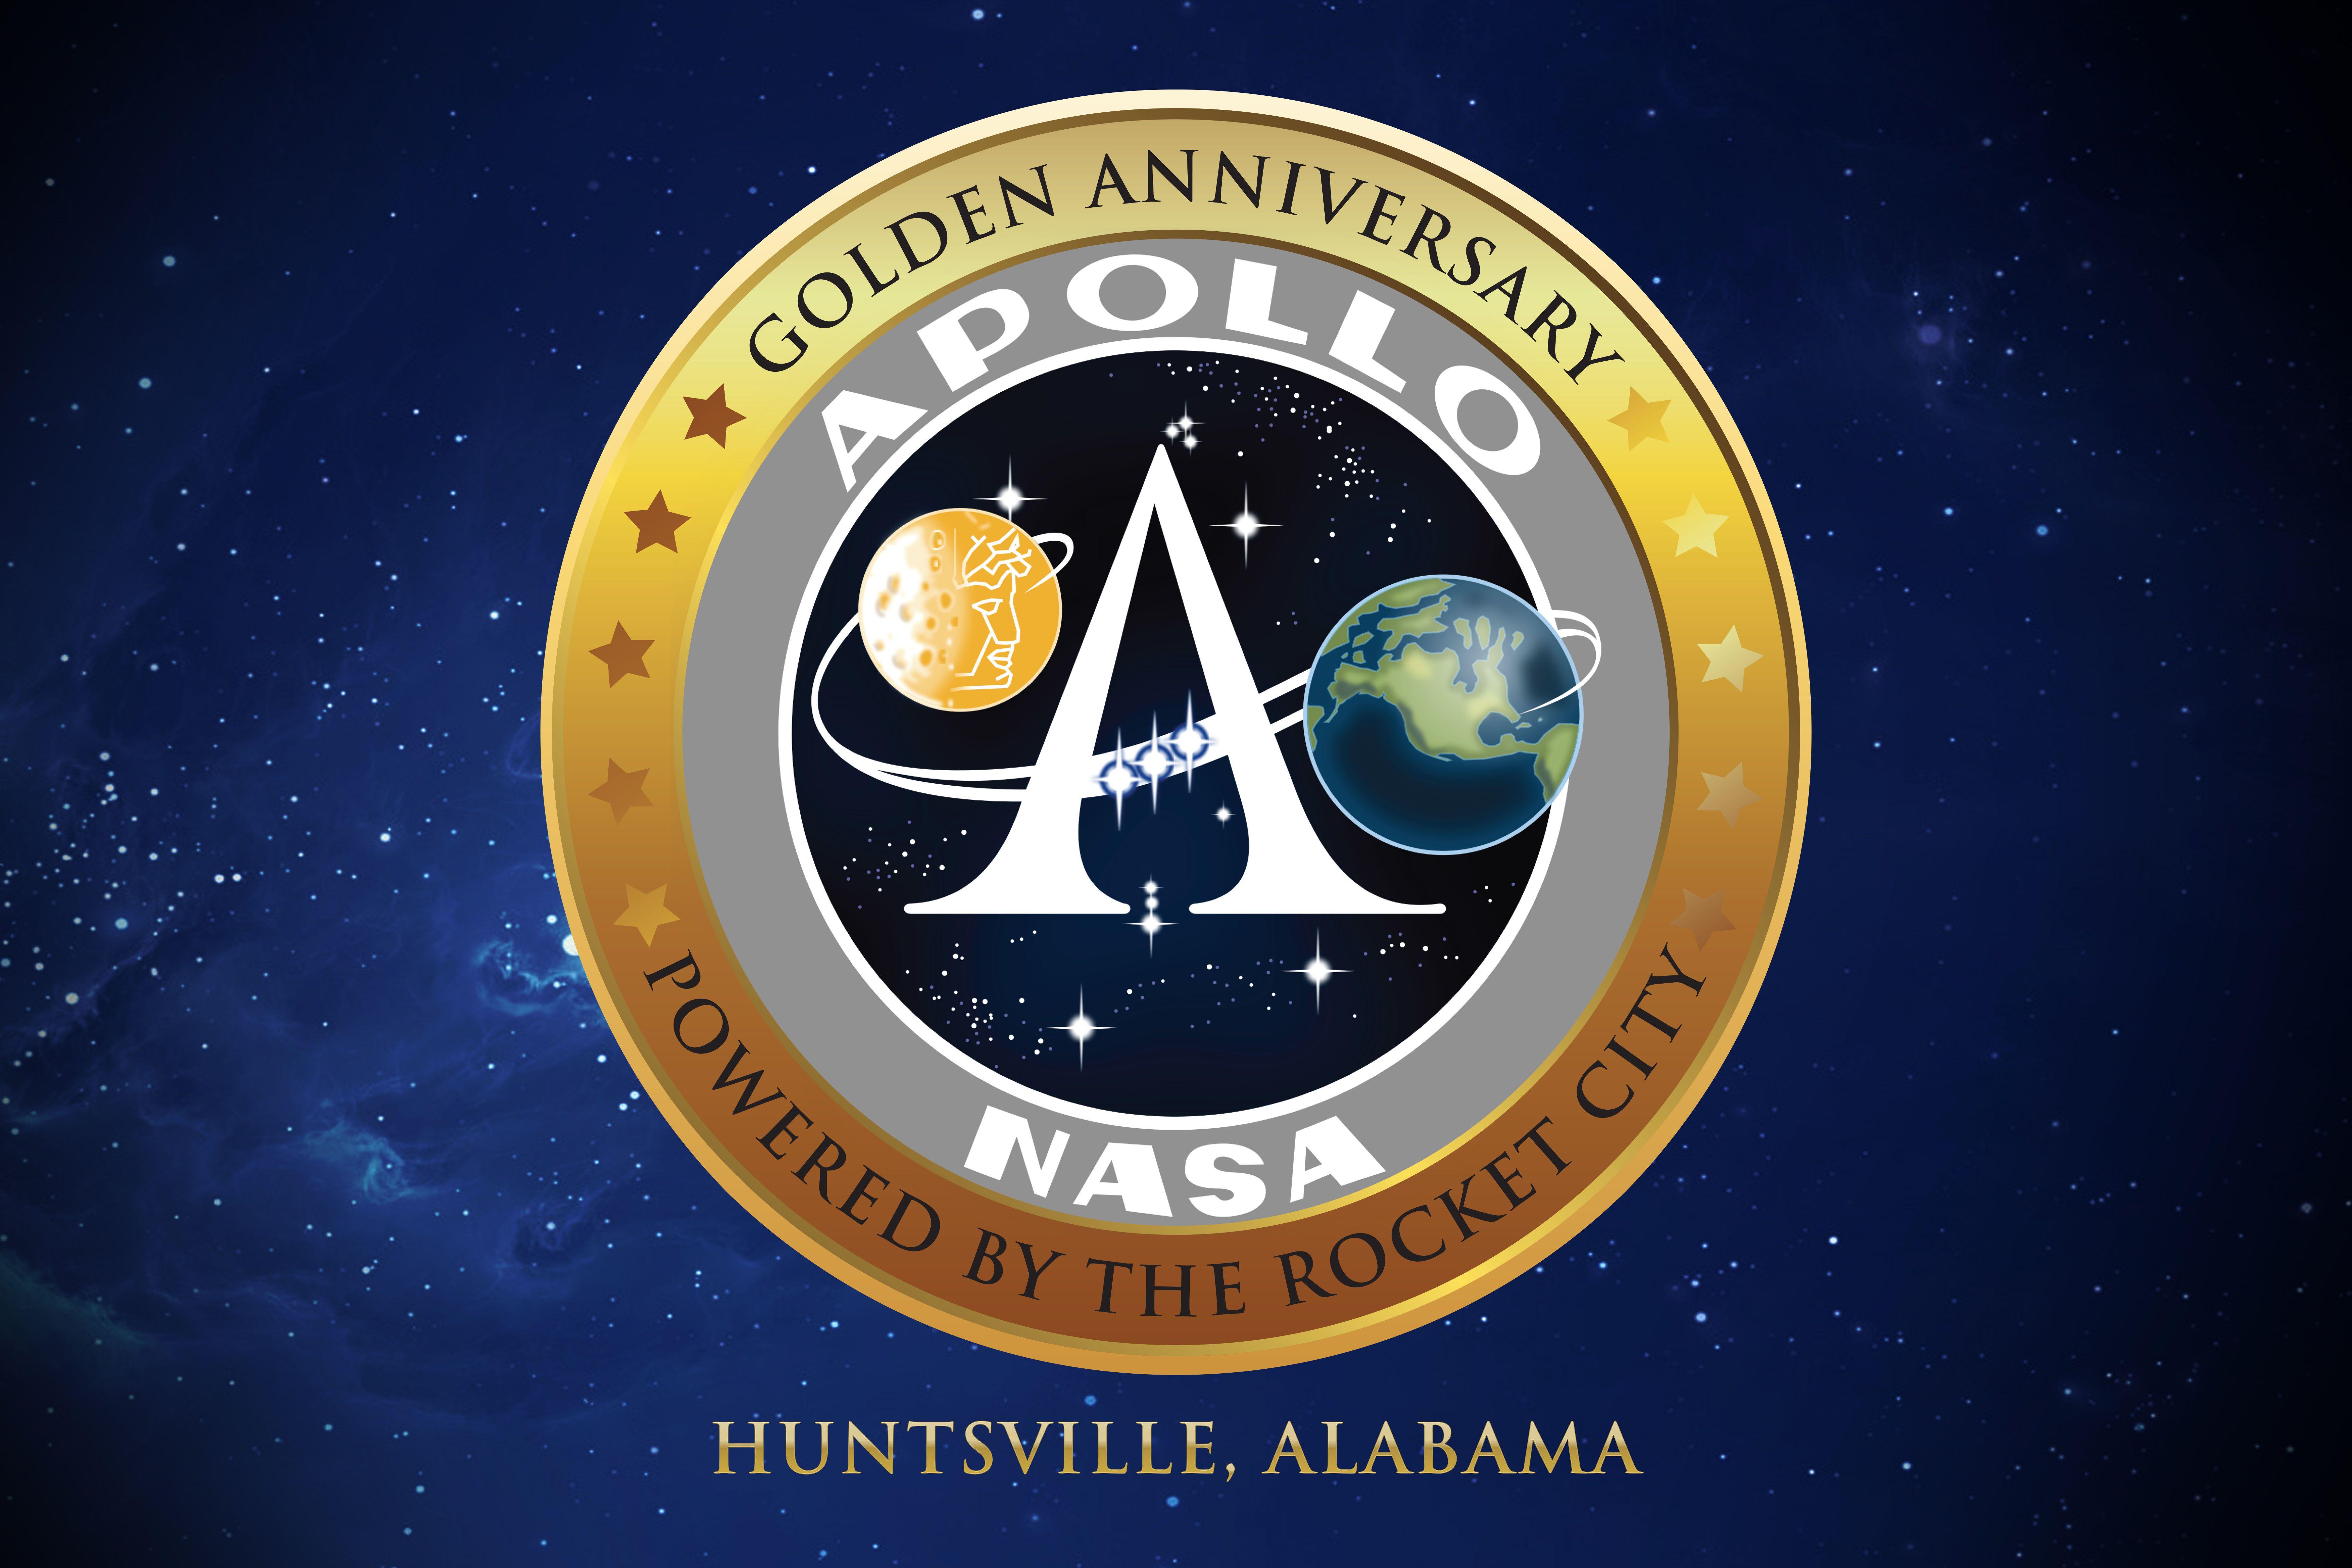 Guinness Book of World Records Logo - Apollo 11 50th Anniversary Guinness Book of World Records Rocket Launch